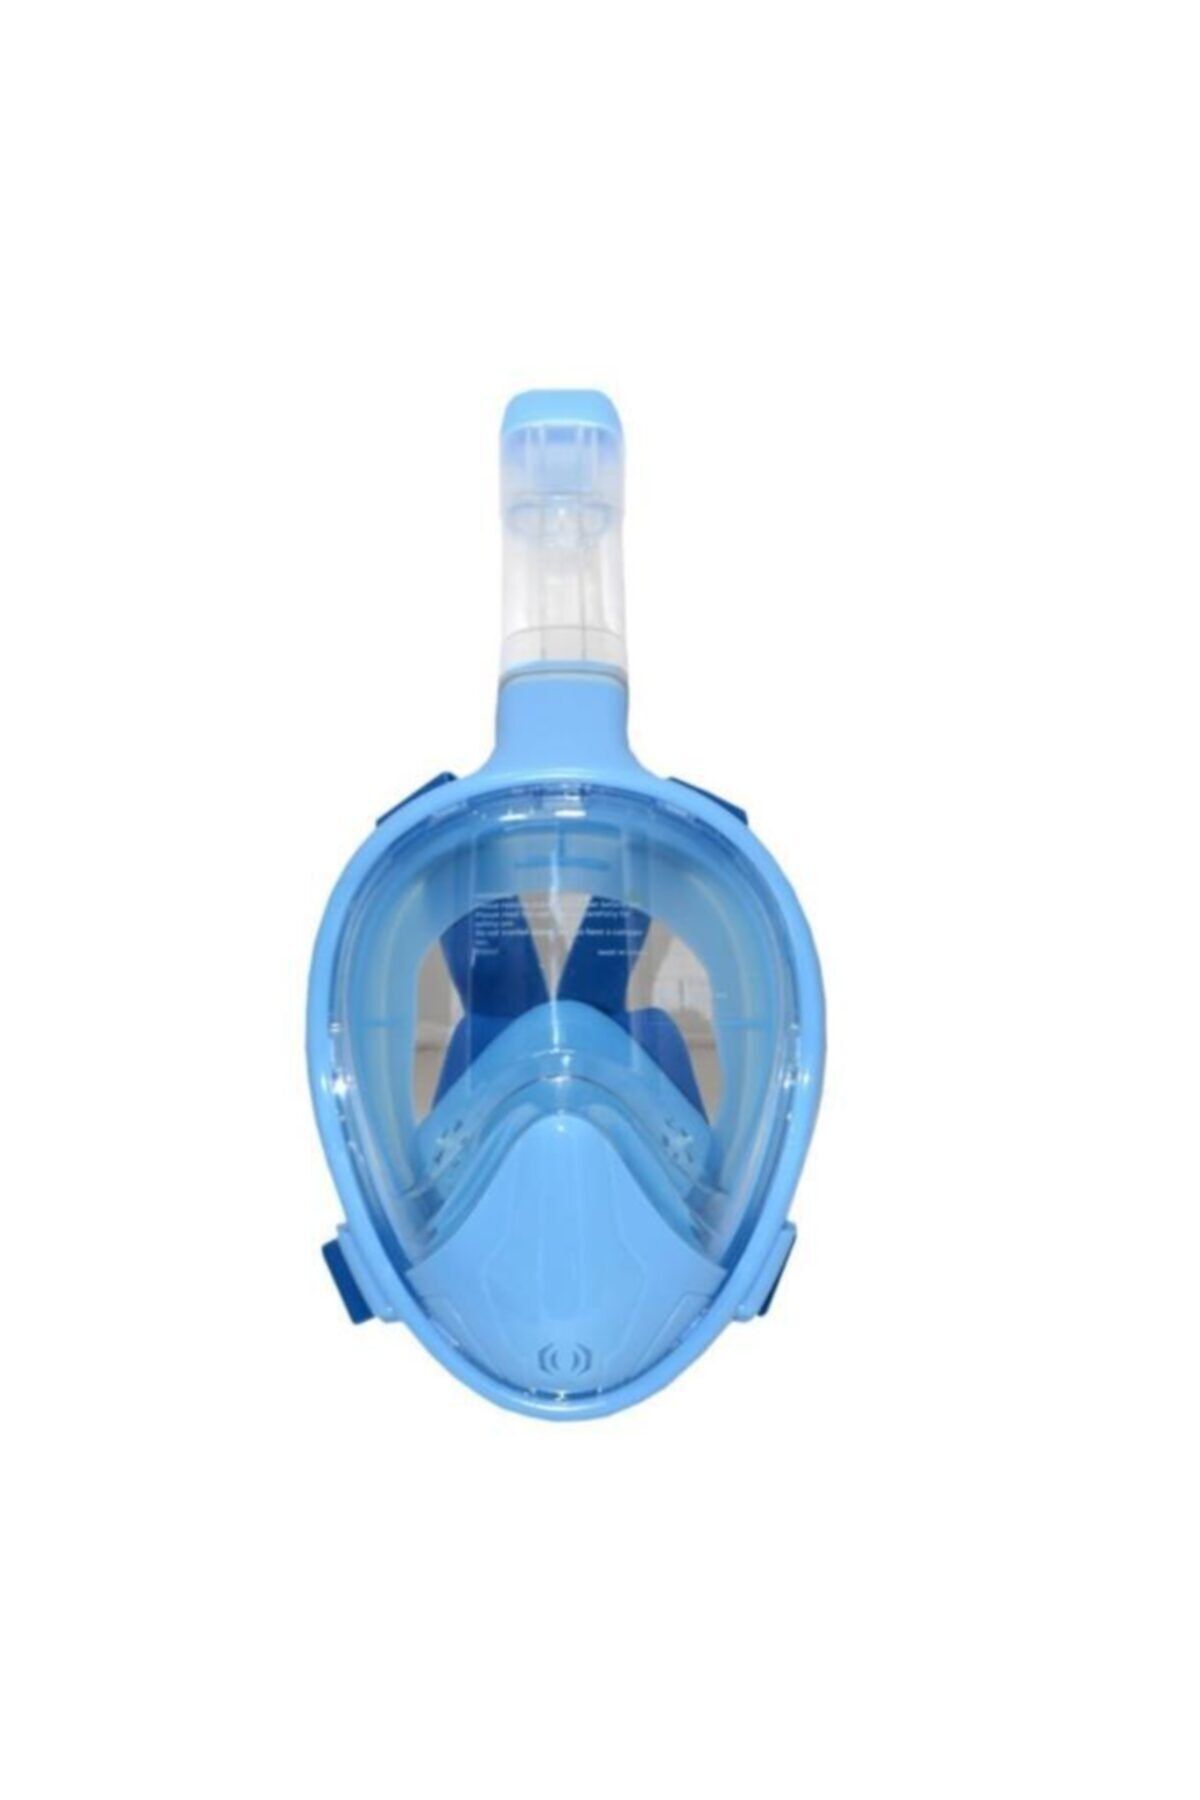 Kızılkaya Oyuncak Tam Yüz Şnorkel Dalış Maskesi, 180° Panoramik Görüntüleme Anti-sis, Anti-sızıntı Çantalı Mavi Xs